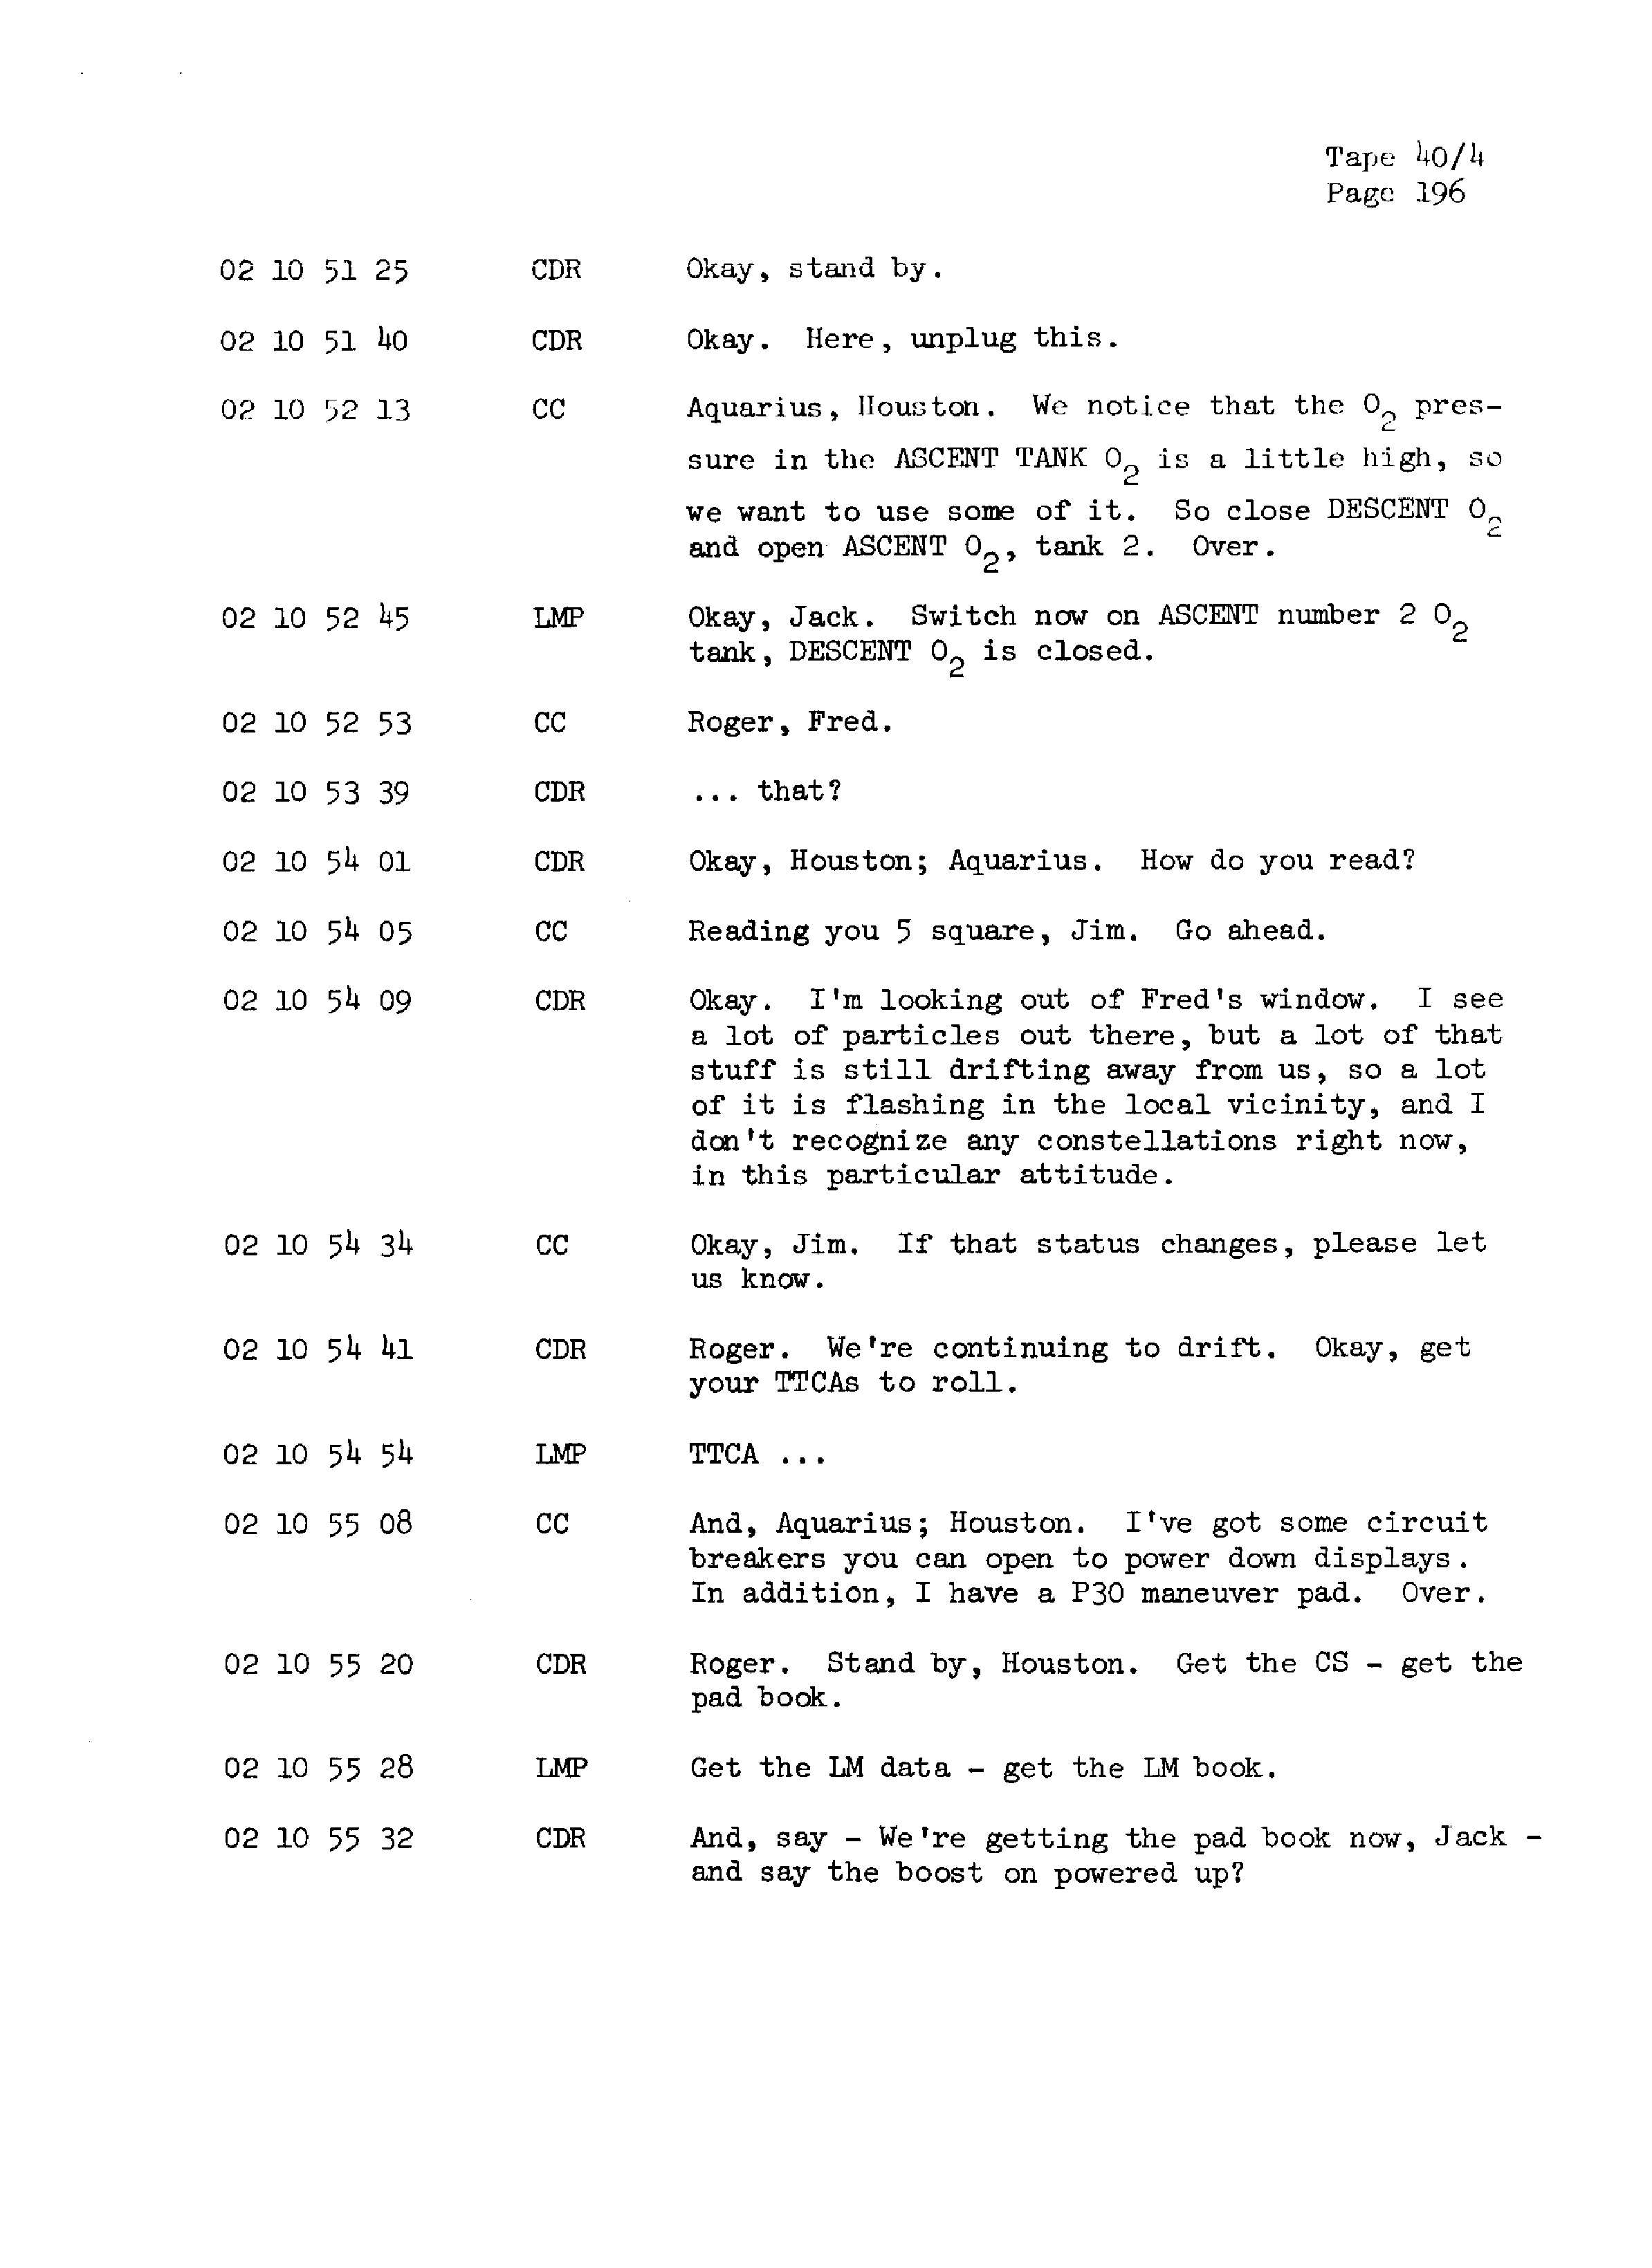 Page 203 of Apollo 13’s original transcript